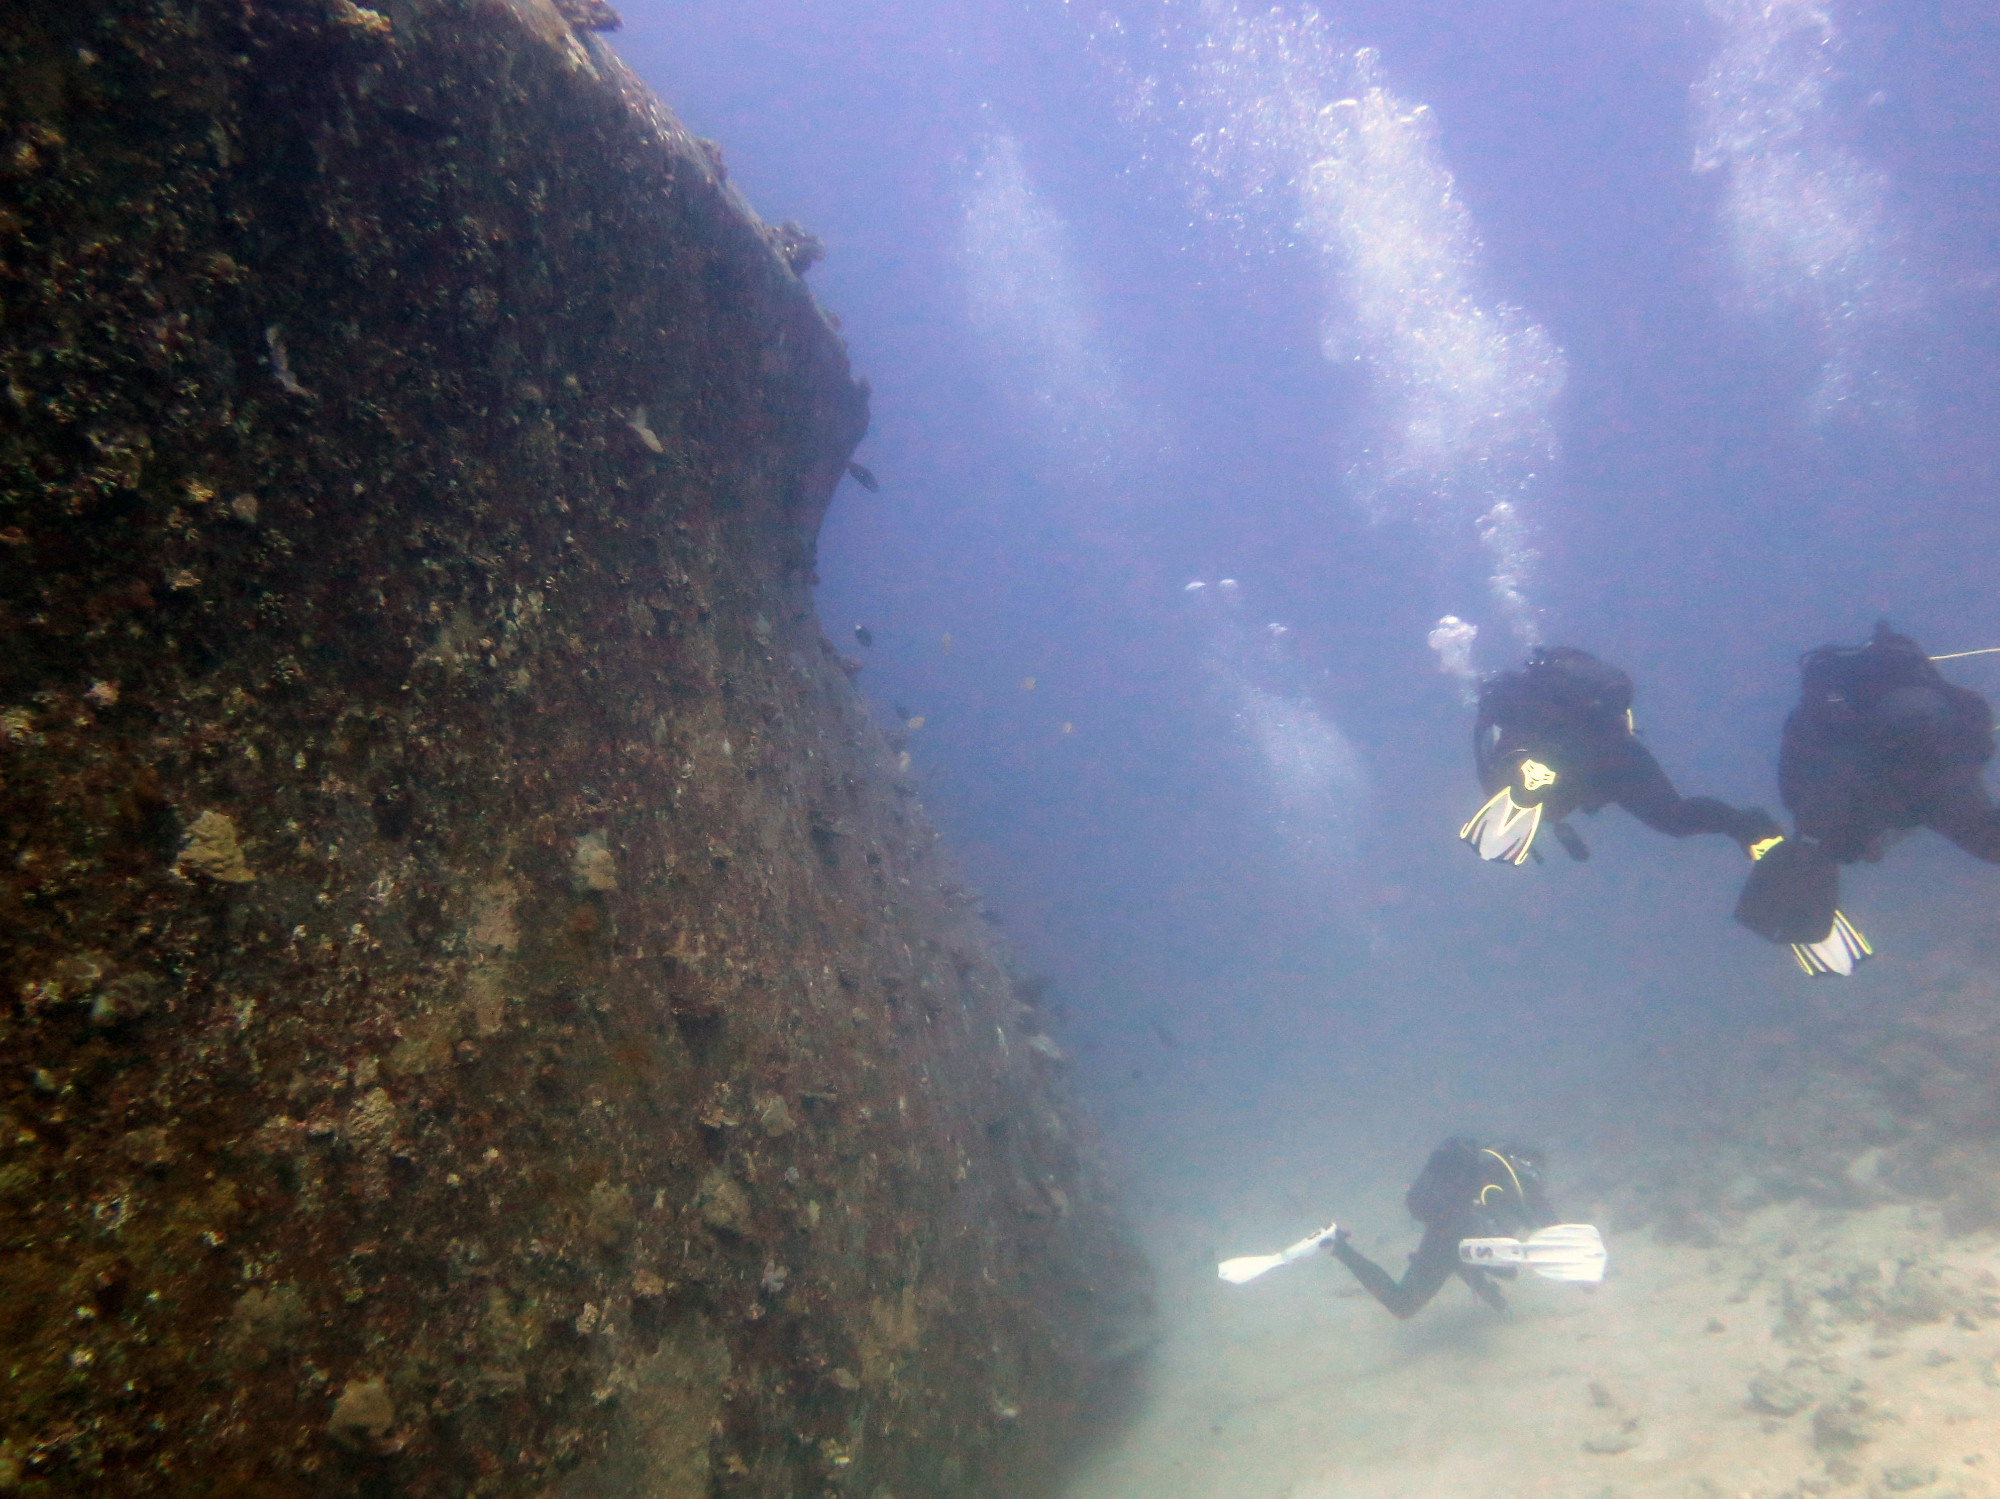 Stella Maru Wreck Dive Site, Маврикий